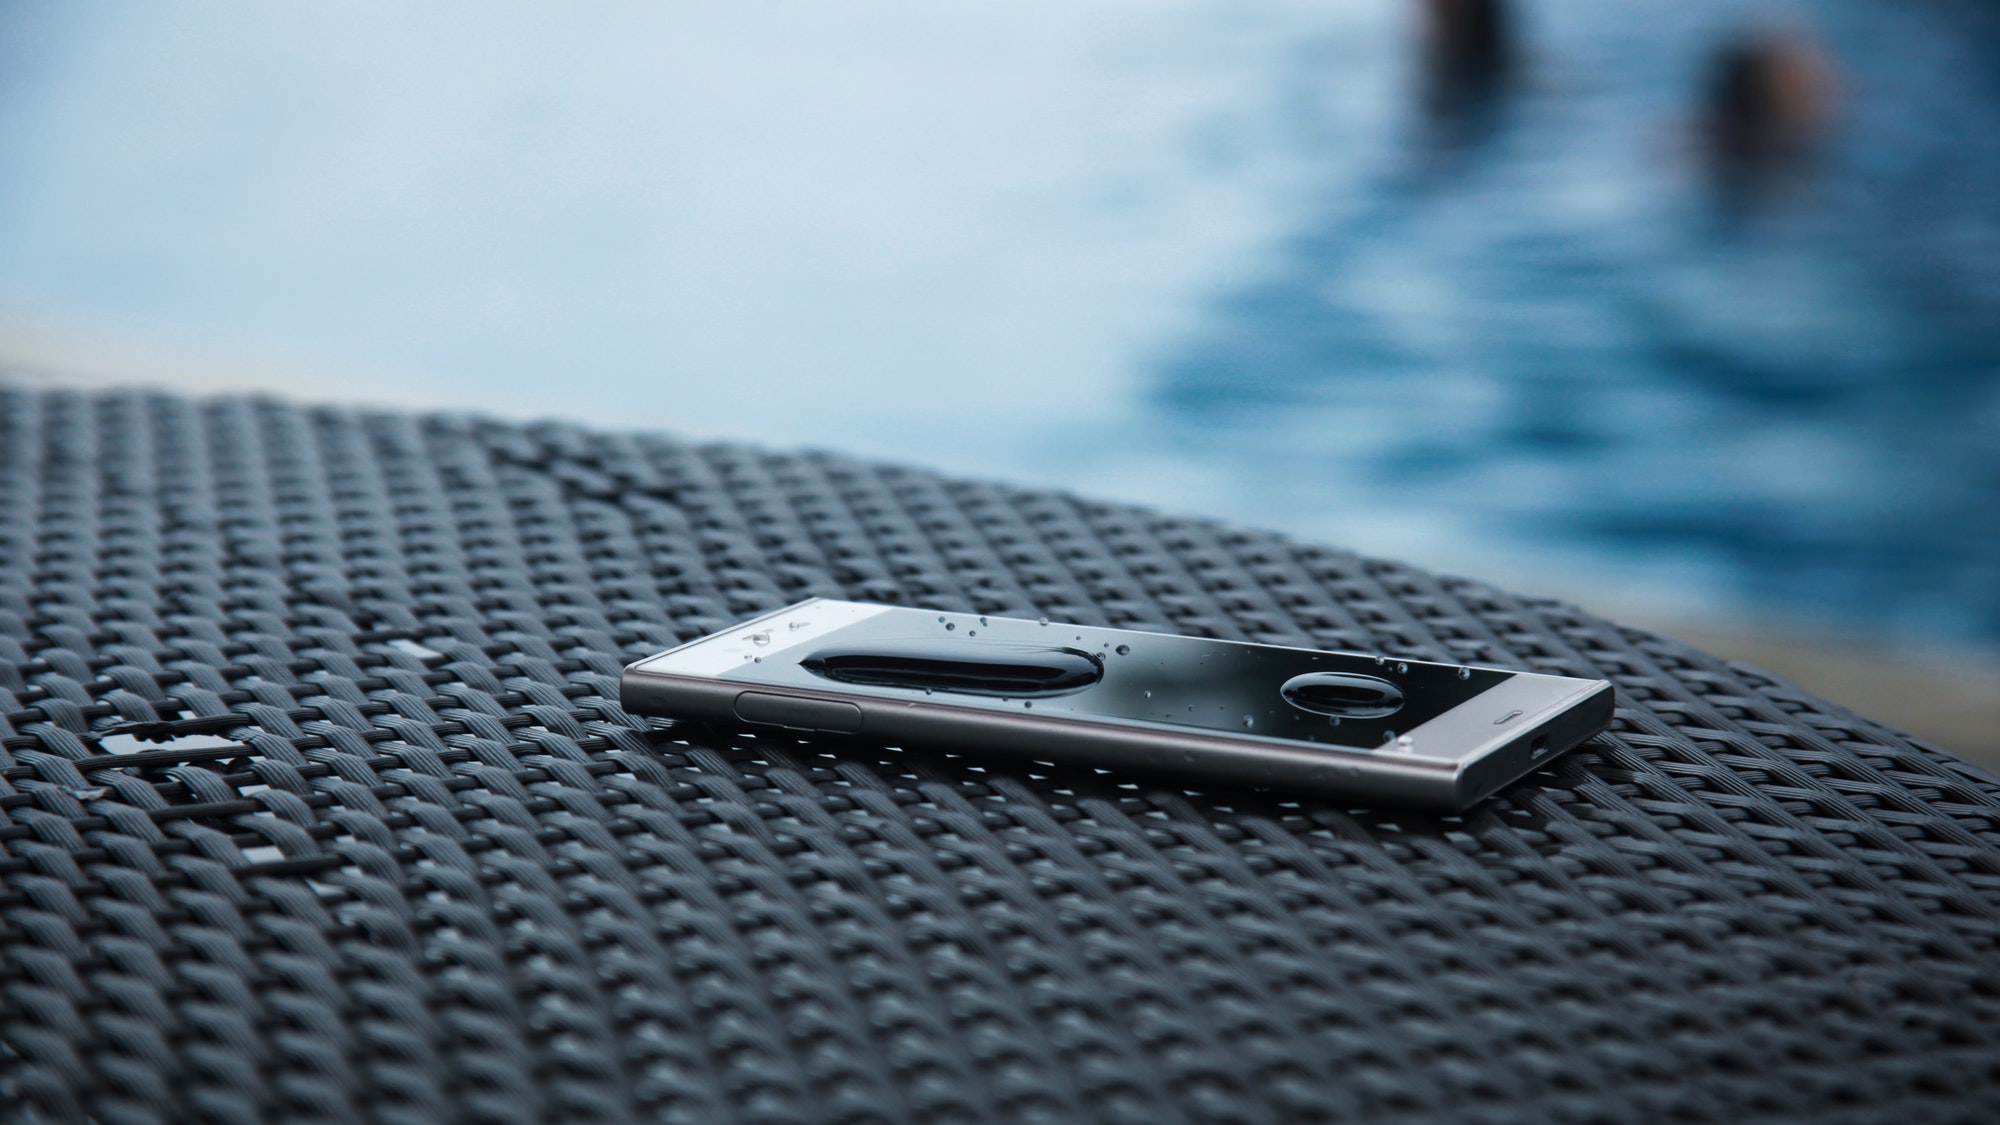 Water resistant smartphone